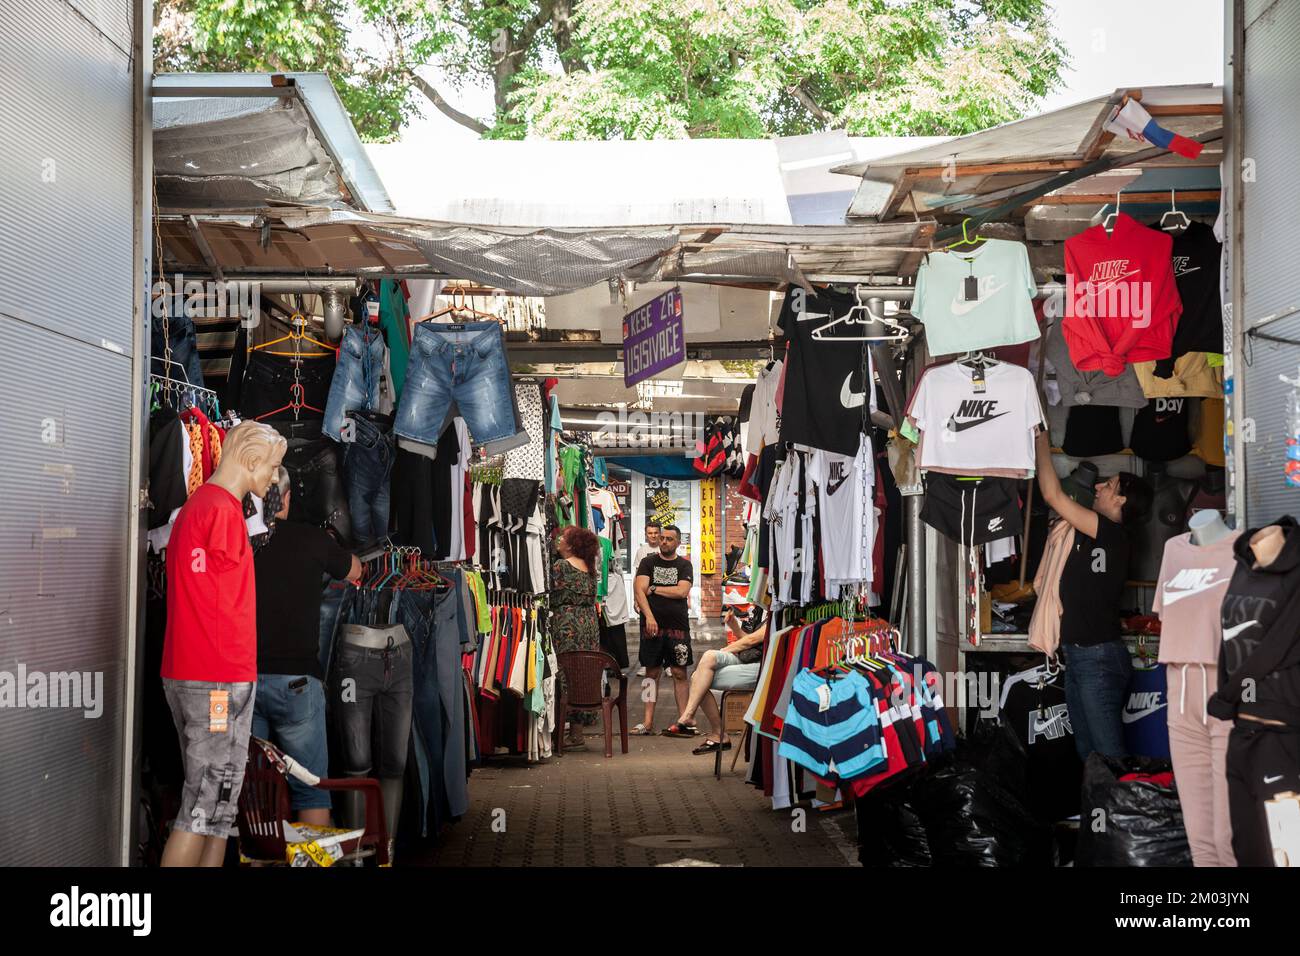 Imagen de puestos de venta de ropa y textiles en el mercado verde Futoska pijaca, uno de los principales mercados de Novi Sad, Serbia. Foto de stock